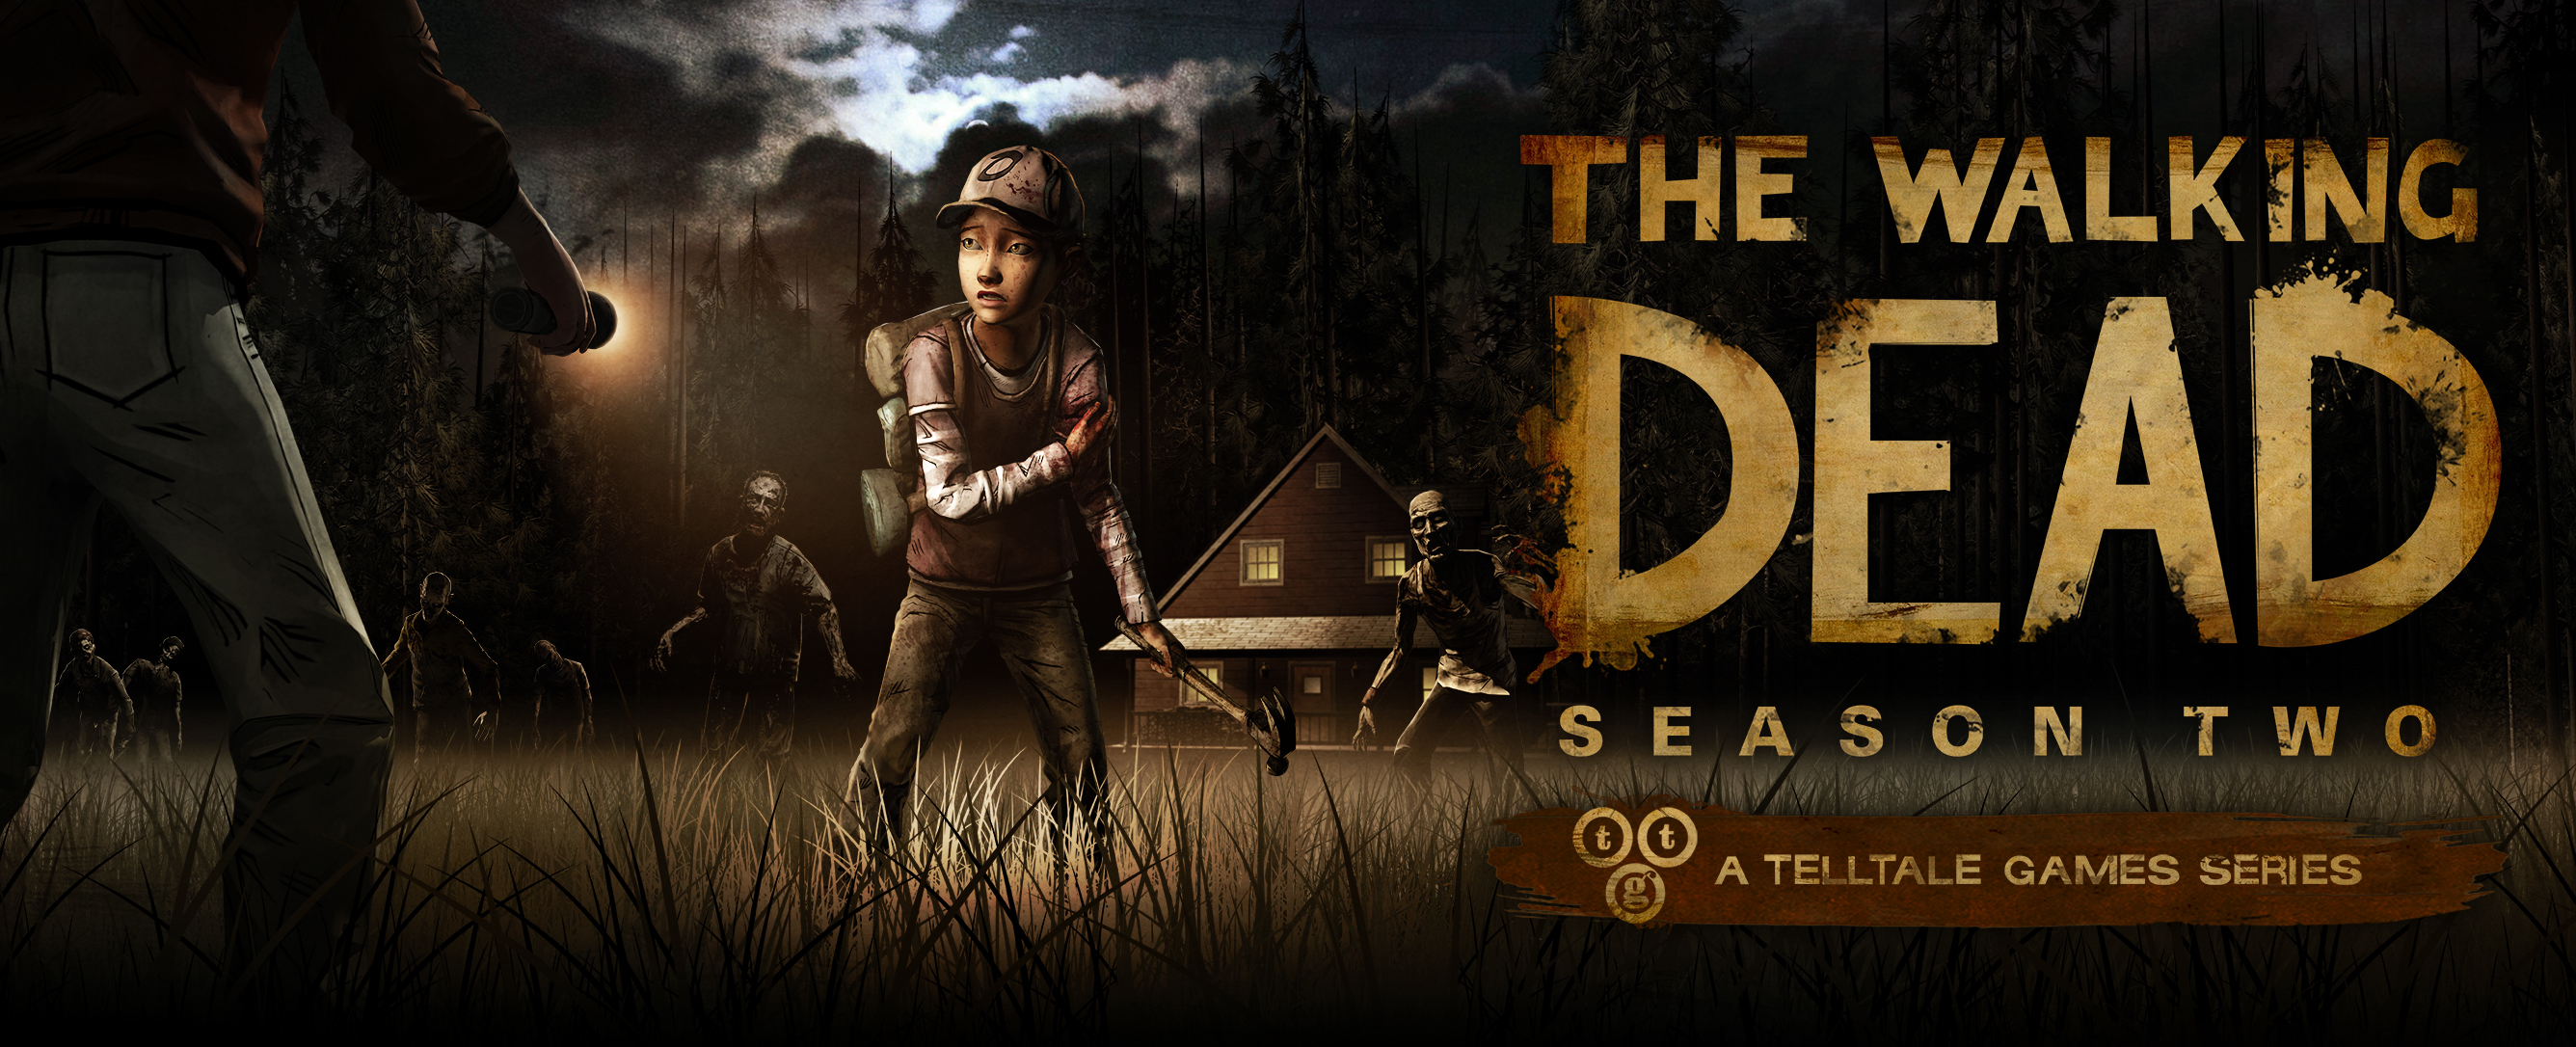 The Walking Dead: Season 2 llega a Windows 10 y se completa la serie en nuestra plataforma